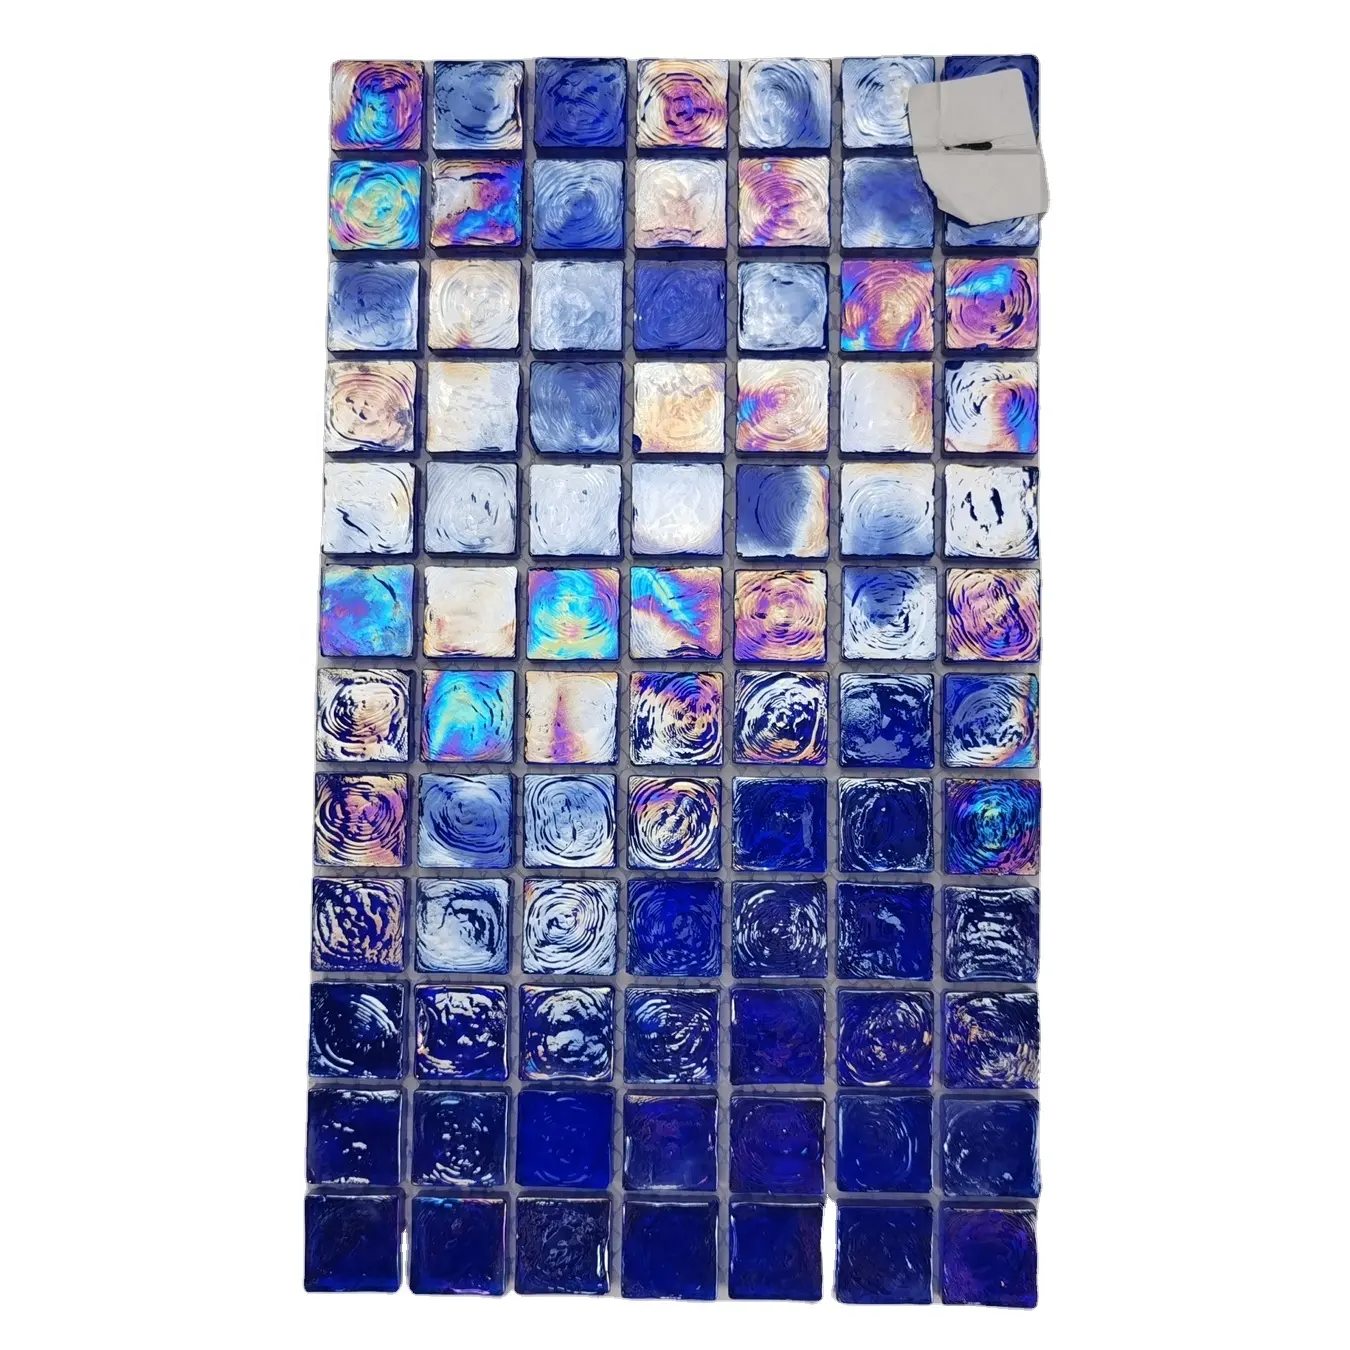 Vinci — carrelage en verre de cristal épais, transparent et irisé, pour salle de bains, piscine, bar, idée de sol